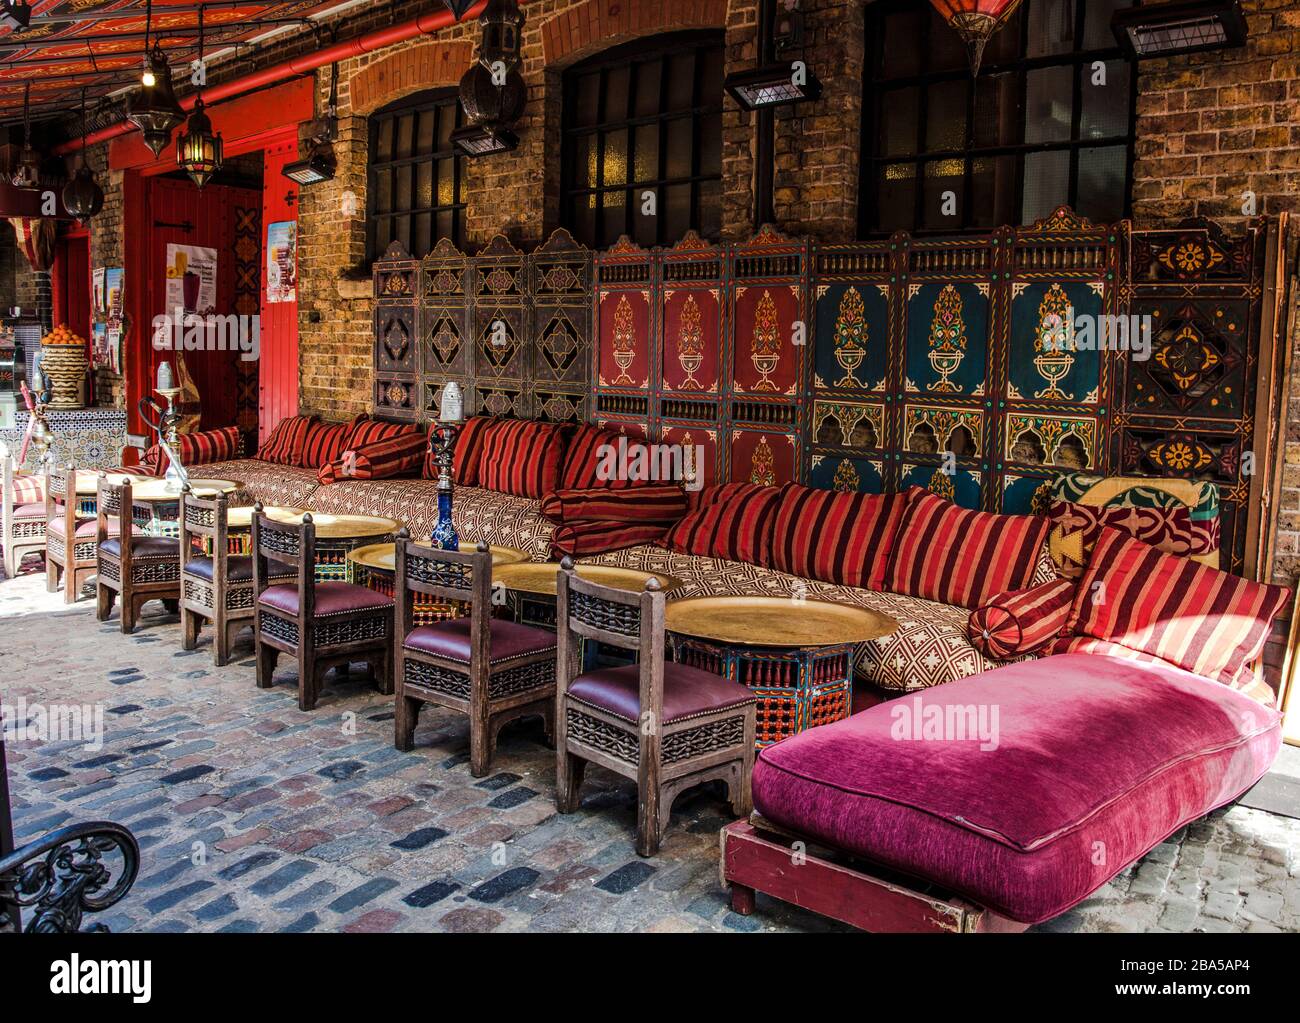 Arabian oder Middle Eastern Sisha Lounge. Fantastische arabische oder marokkanische Einrichtung Stockfoto